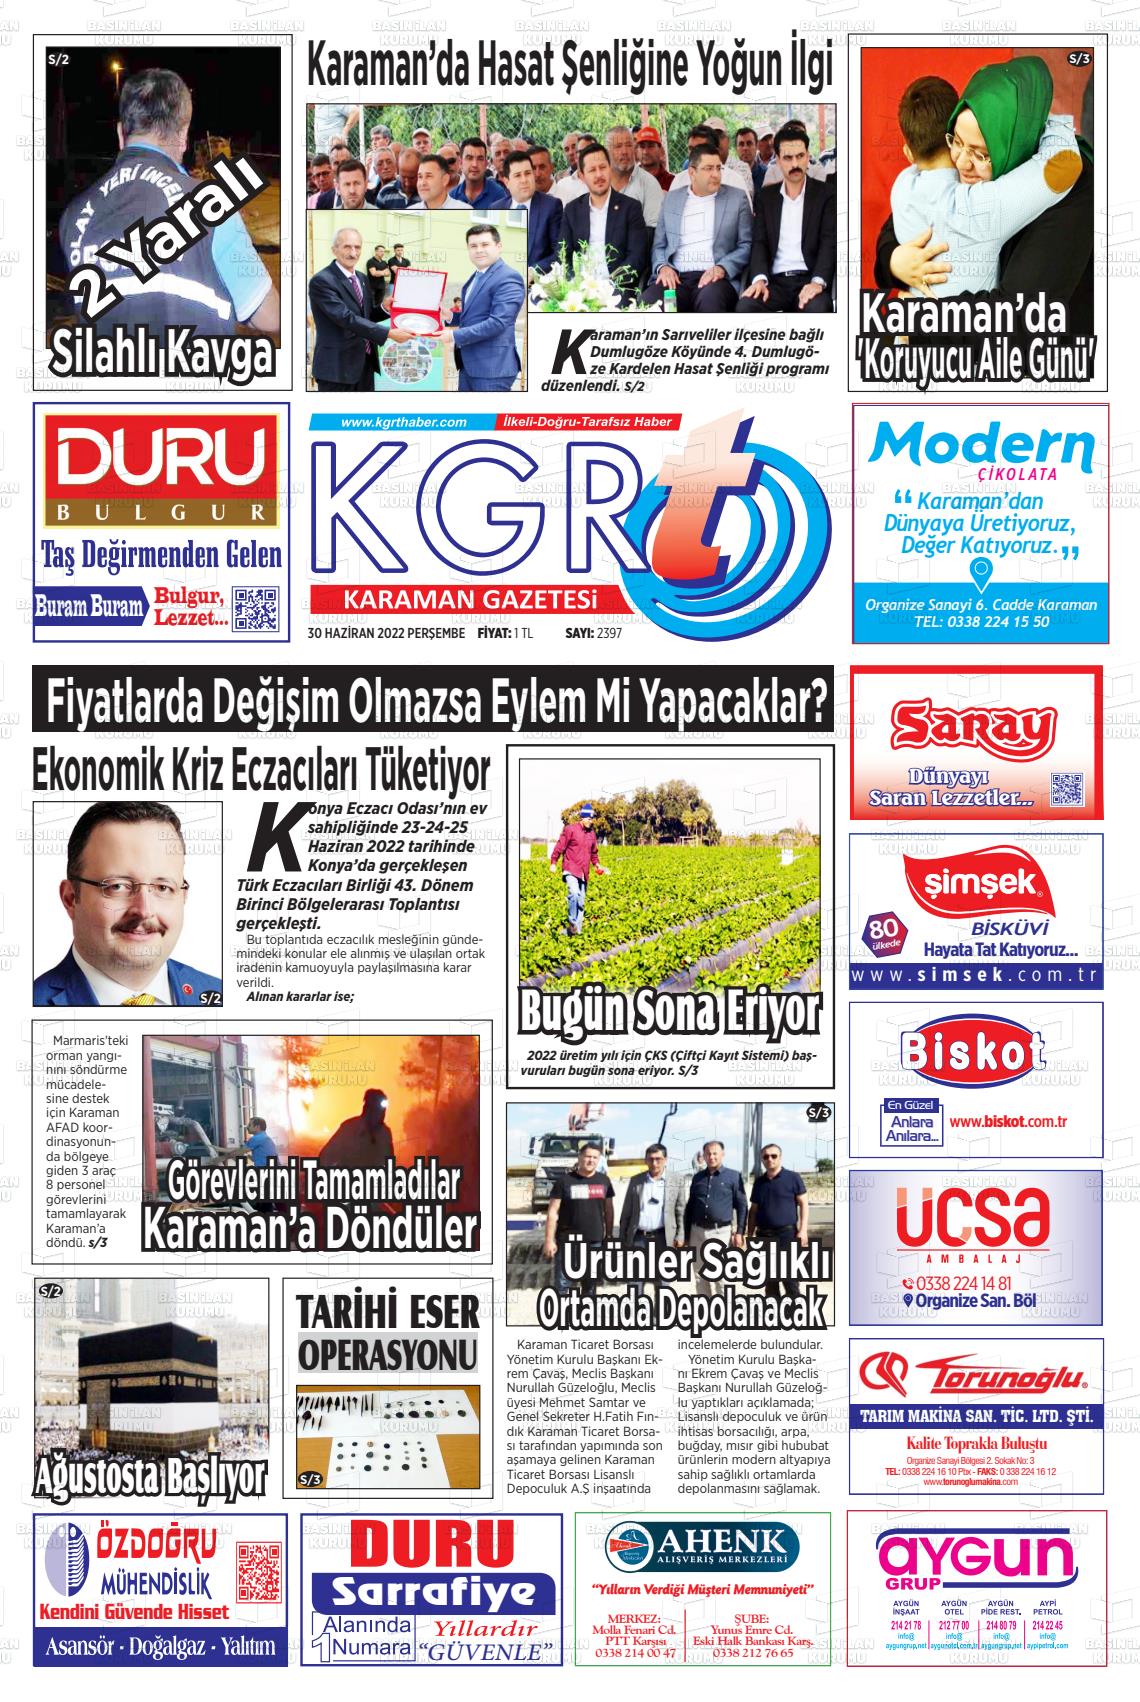 02 Temmuz 2022 Kgrt Karaman Gazete Manşeti